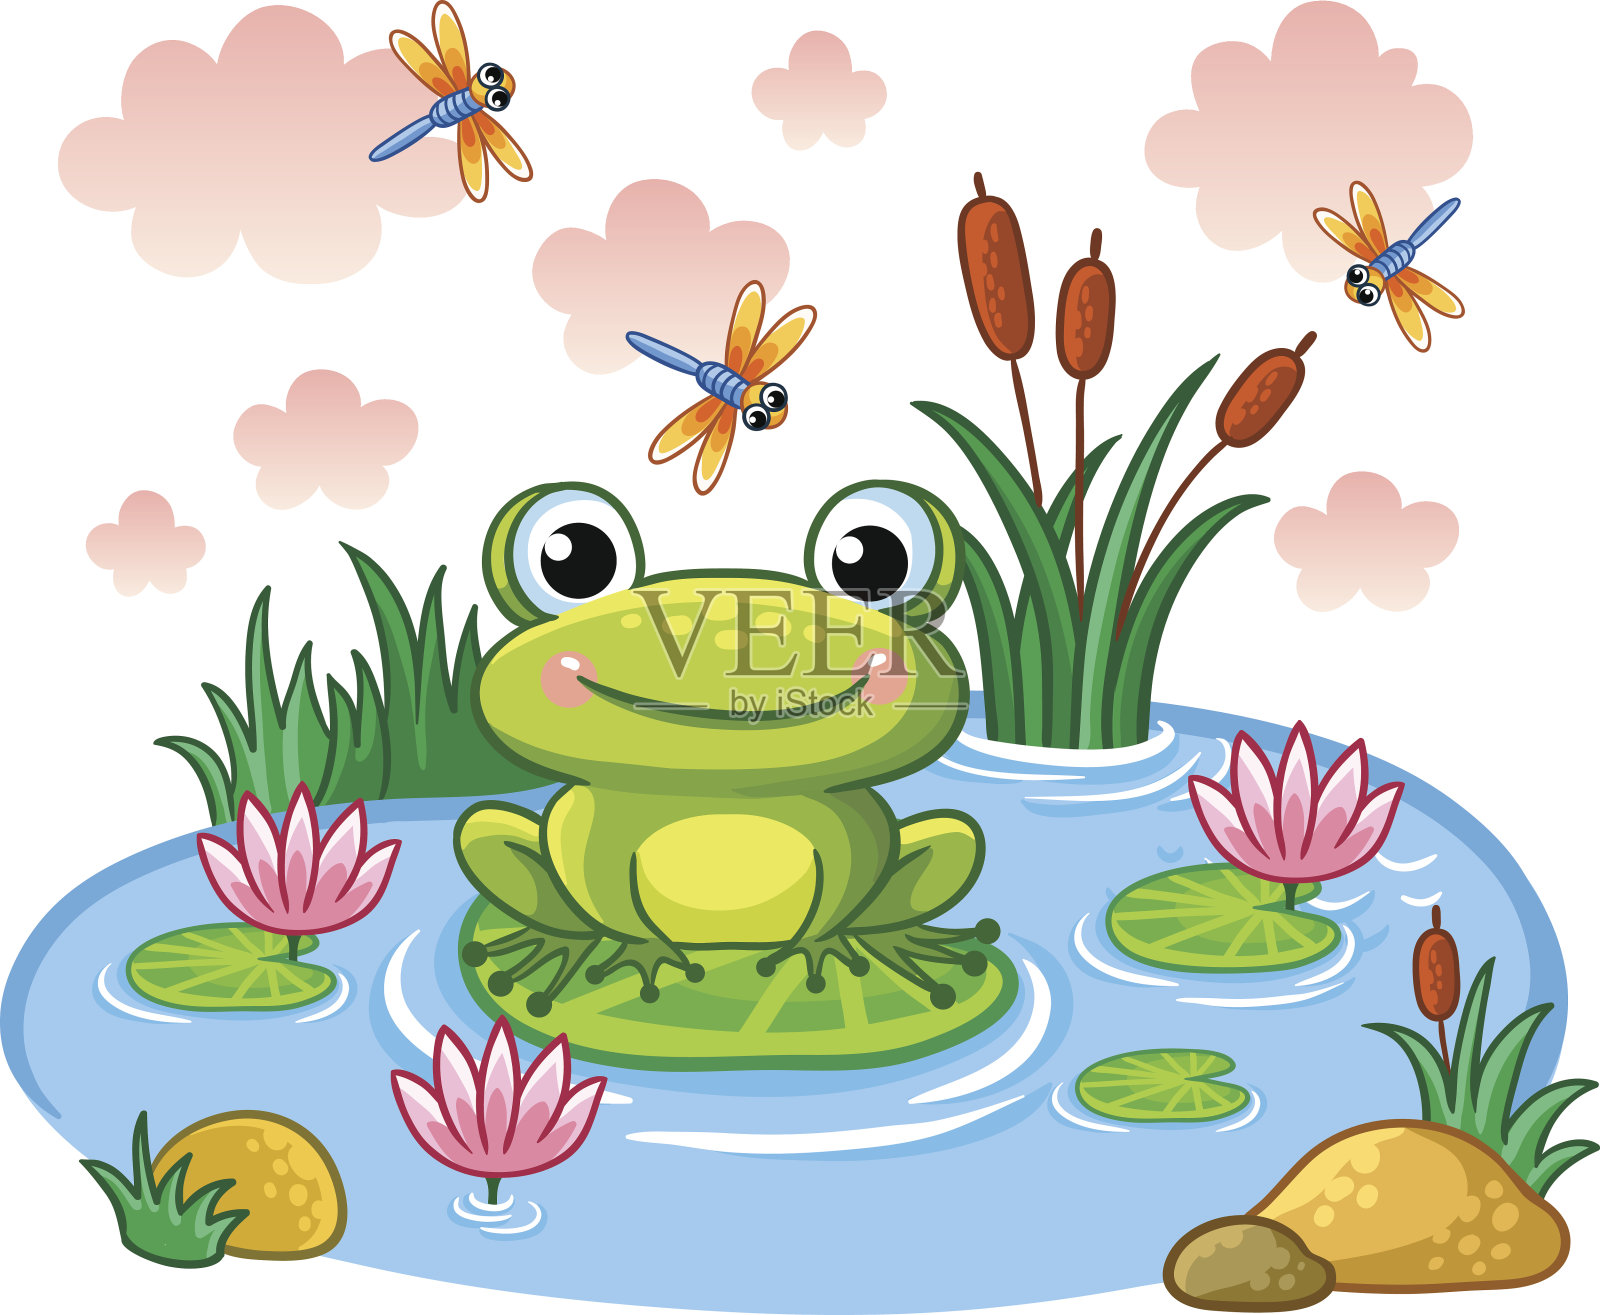 卡通图画一只青蛙蹲坐在池塘边透明PNG素材